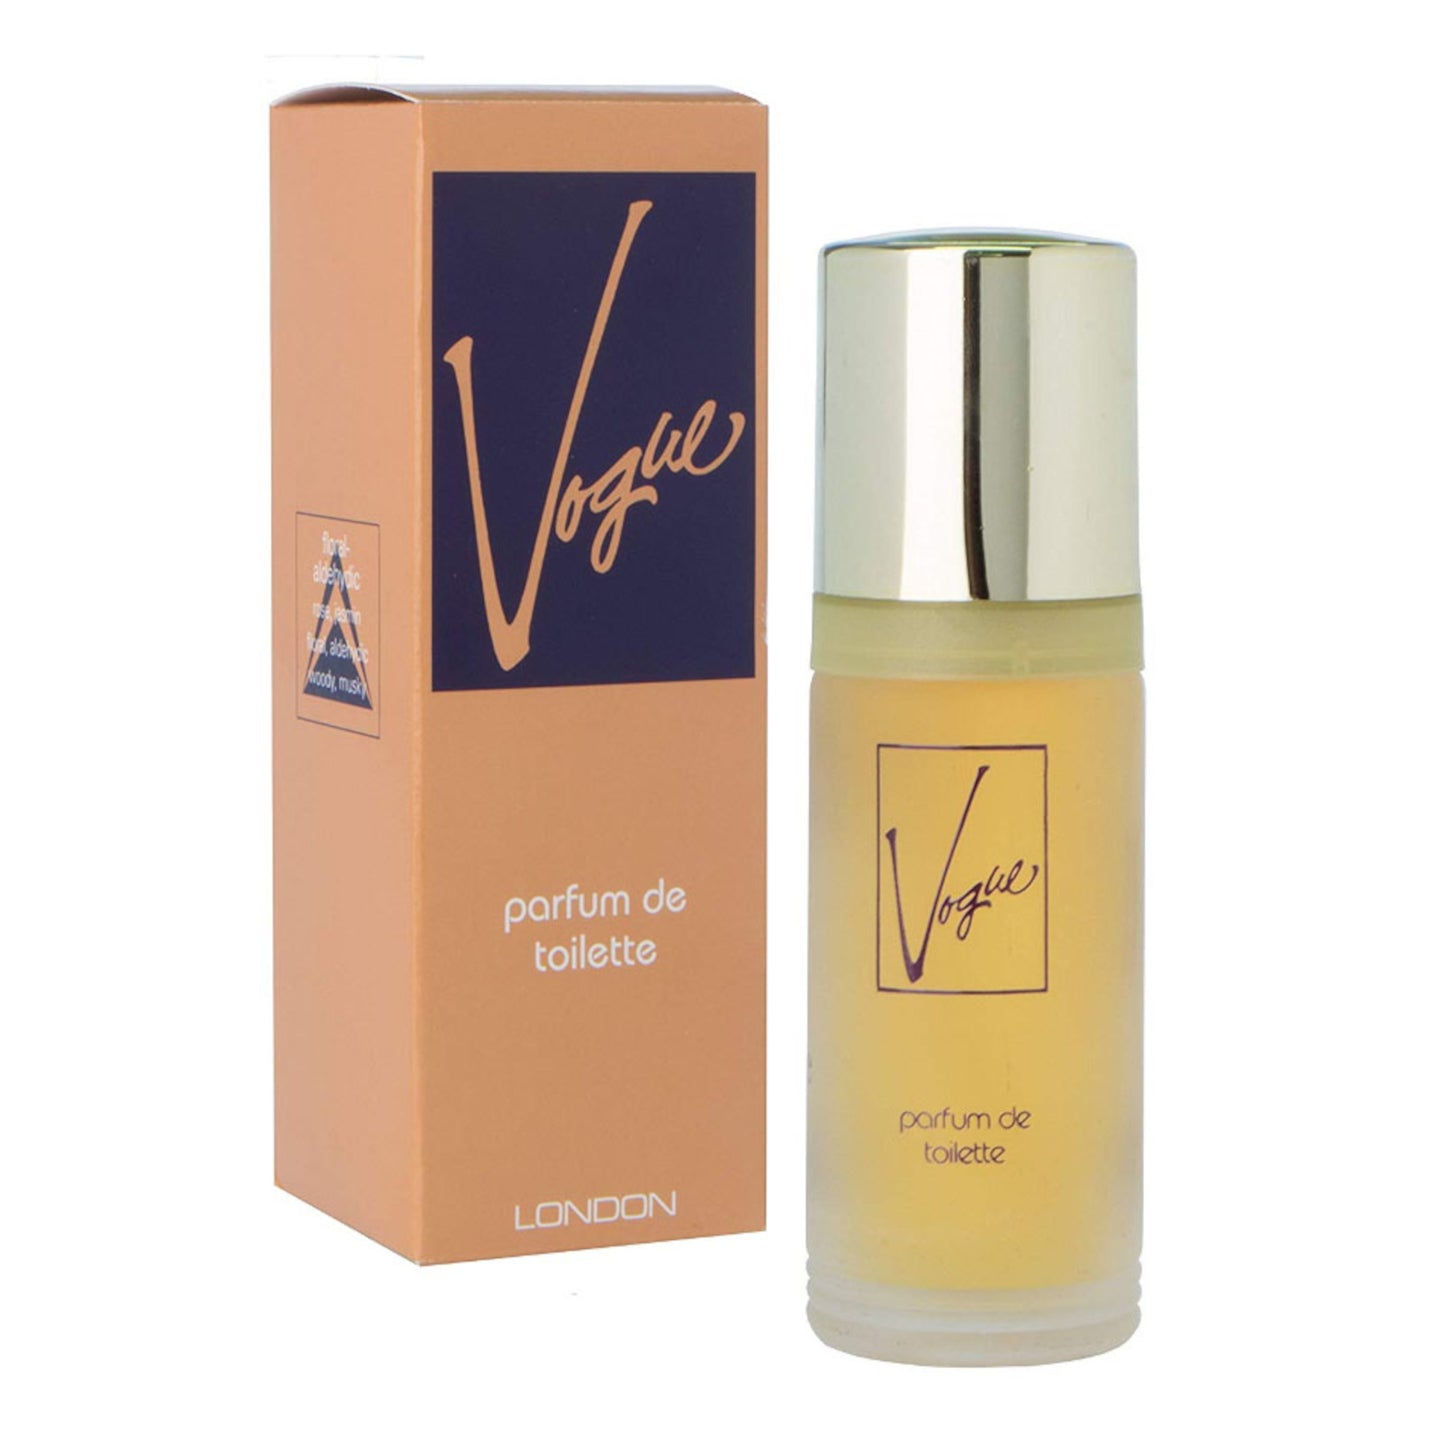 Milton Lloyd Vogue 55ml Parfum De Toilette